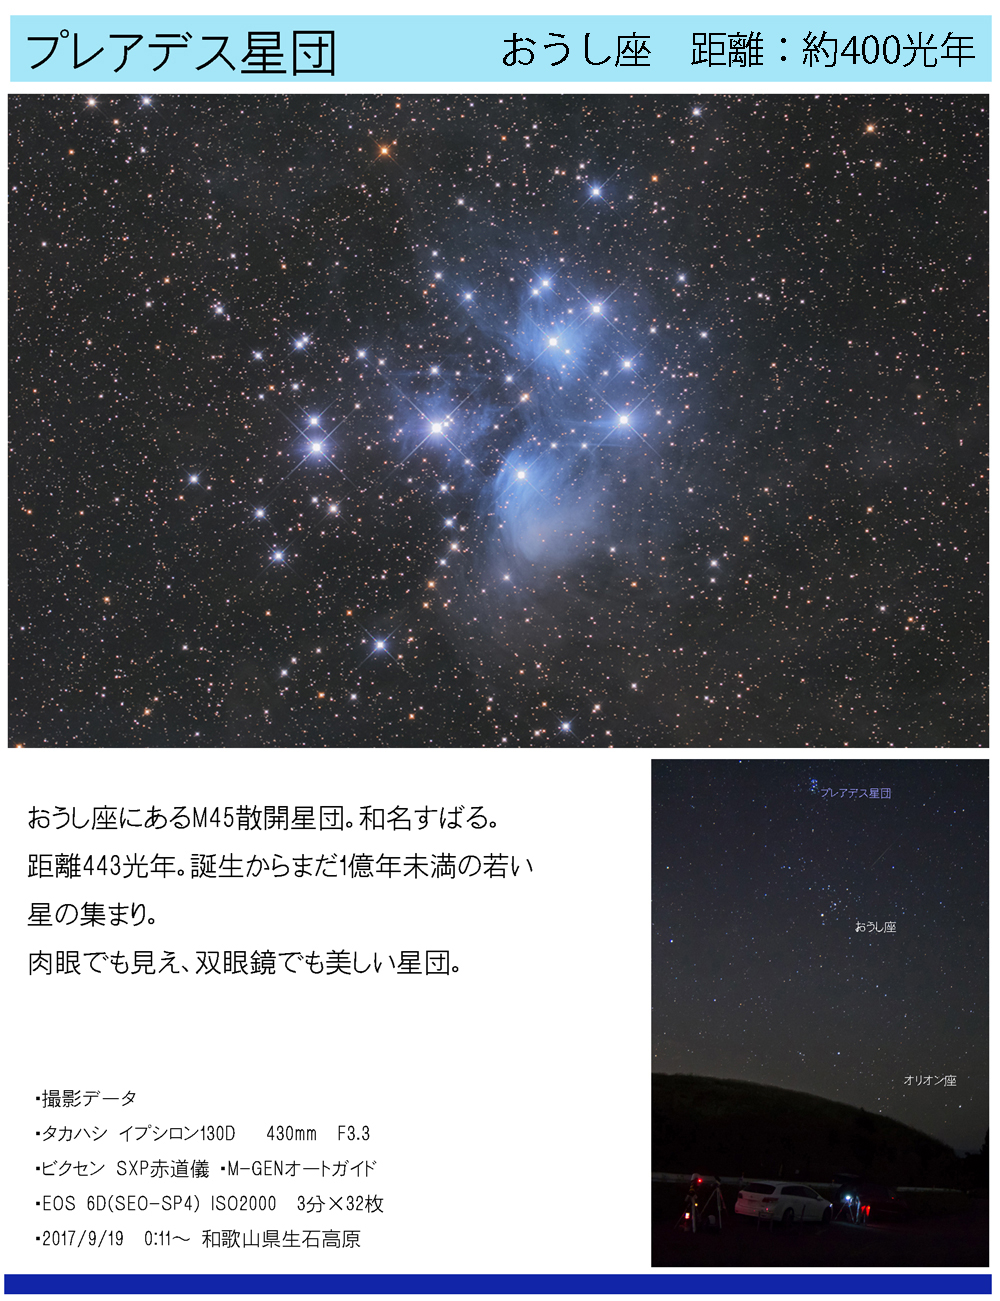 プレアデス星団の天体写真